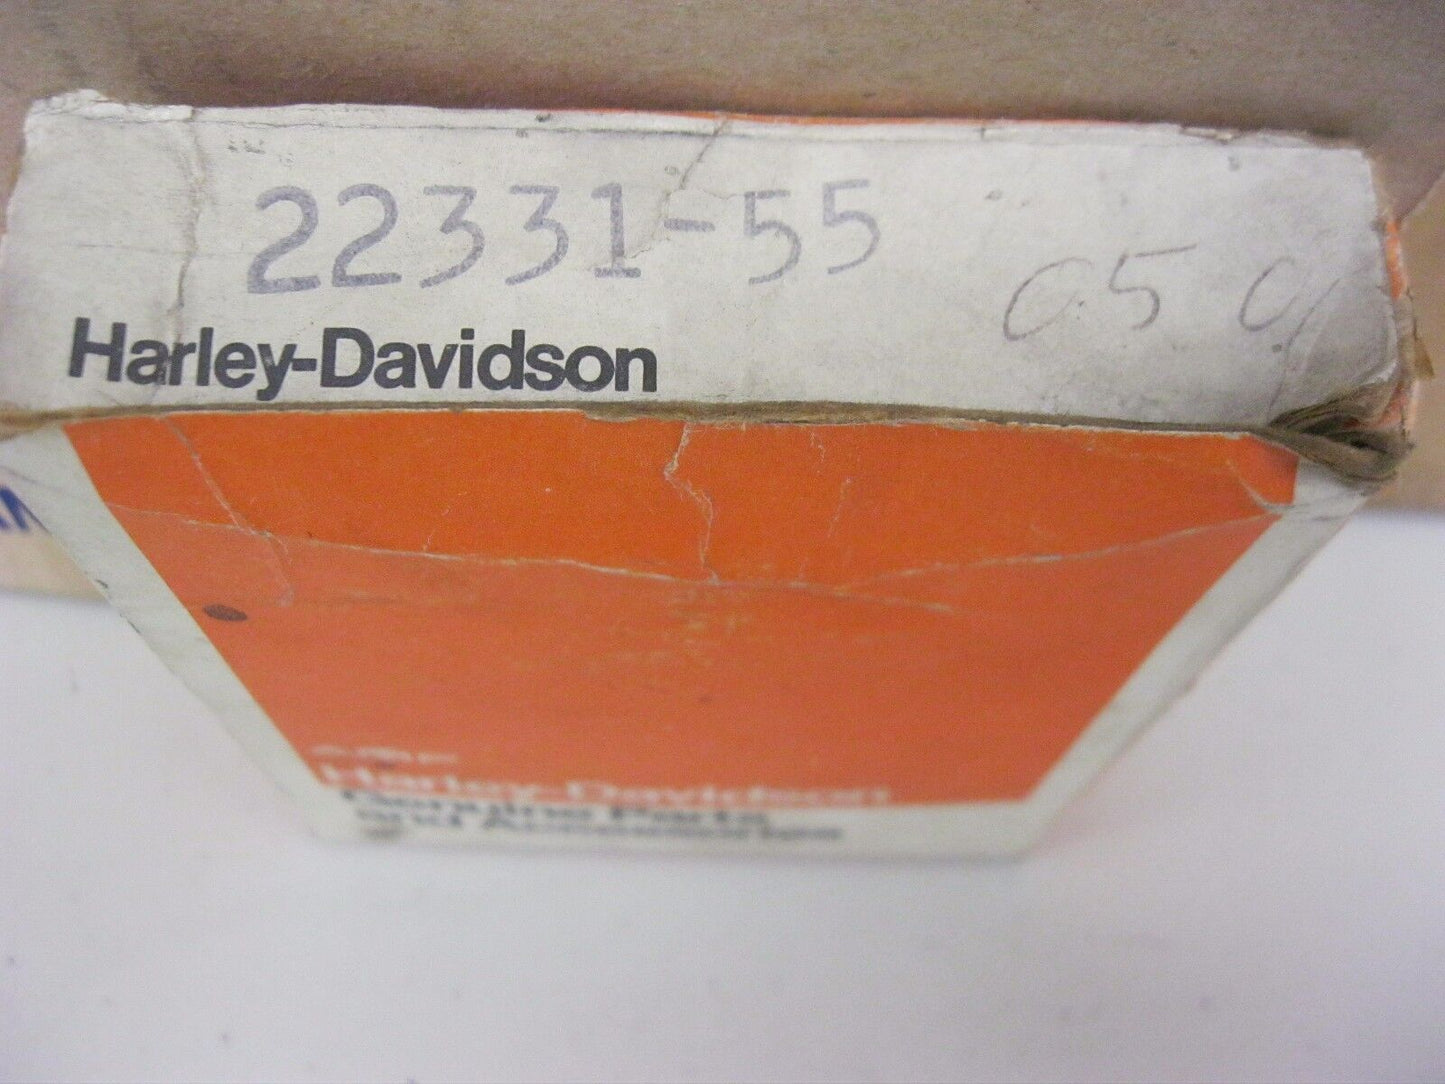 HARLEY DAVIDSON OEM 22331-55  PISTON RING SET .050